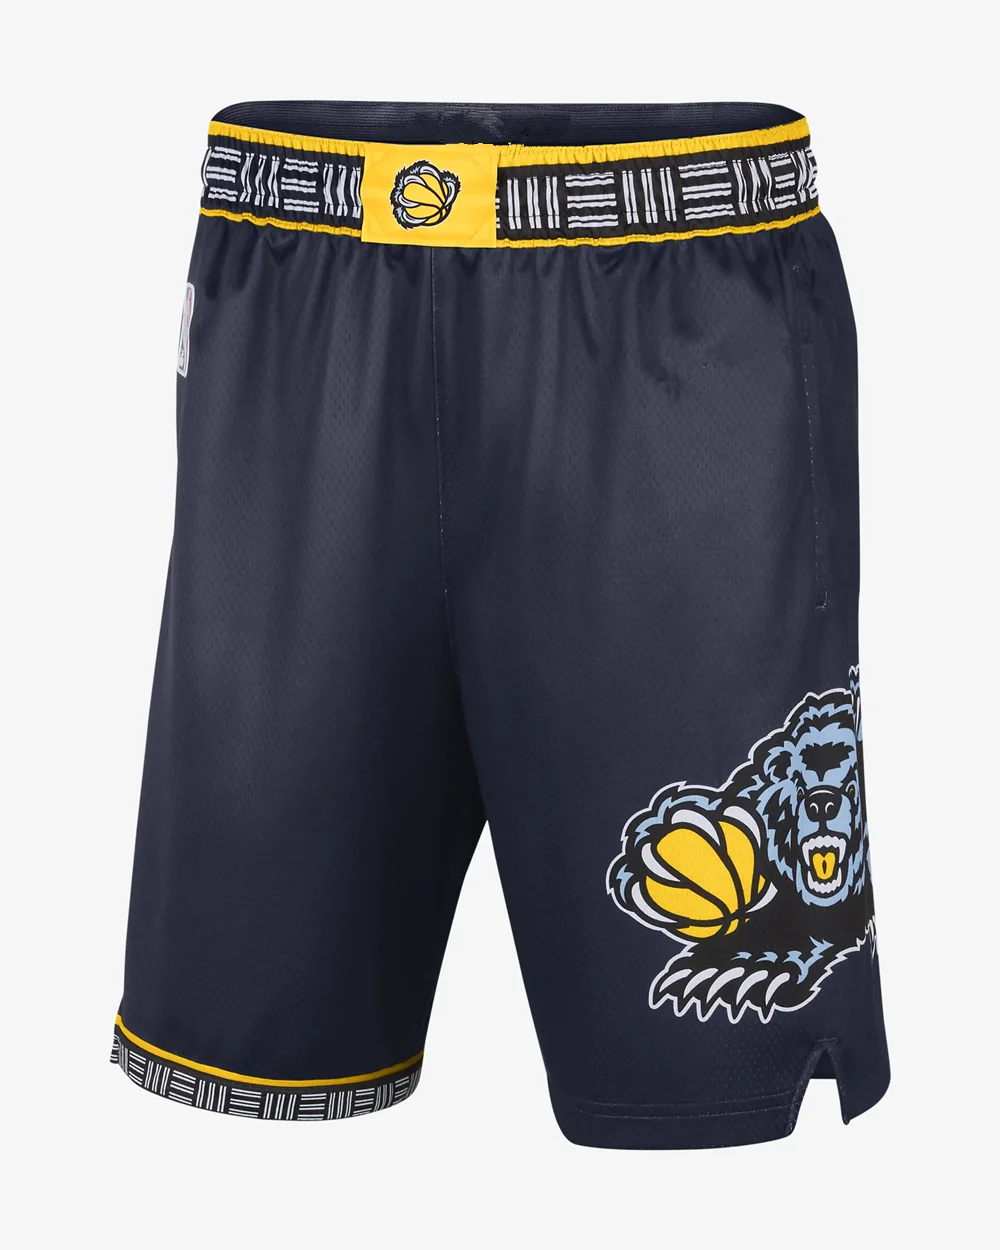 New Wholesale Cheap Stitched Basketball Jersey Memphis 12 Ja